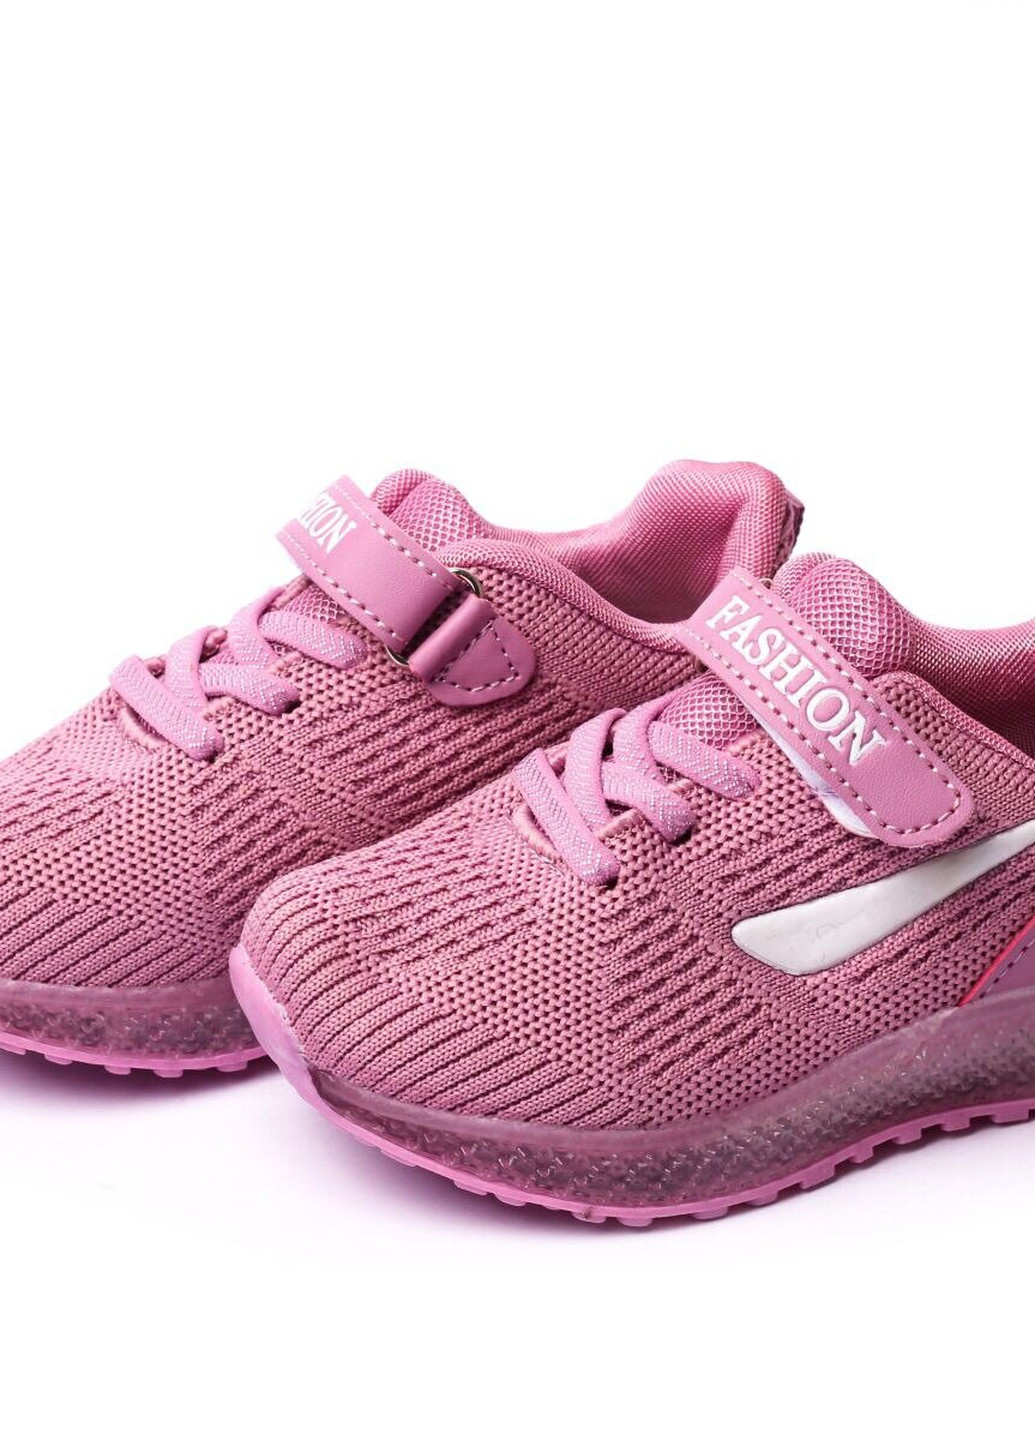 Фиолетовые демисезонные кроссовки детские, для девочки, 22 размер 2000903162414 Erra